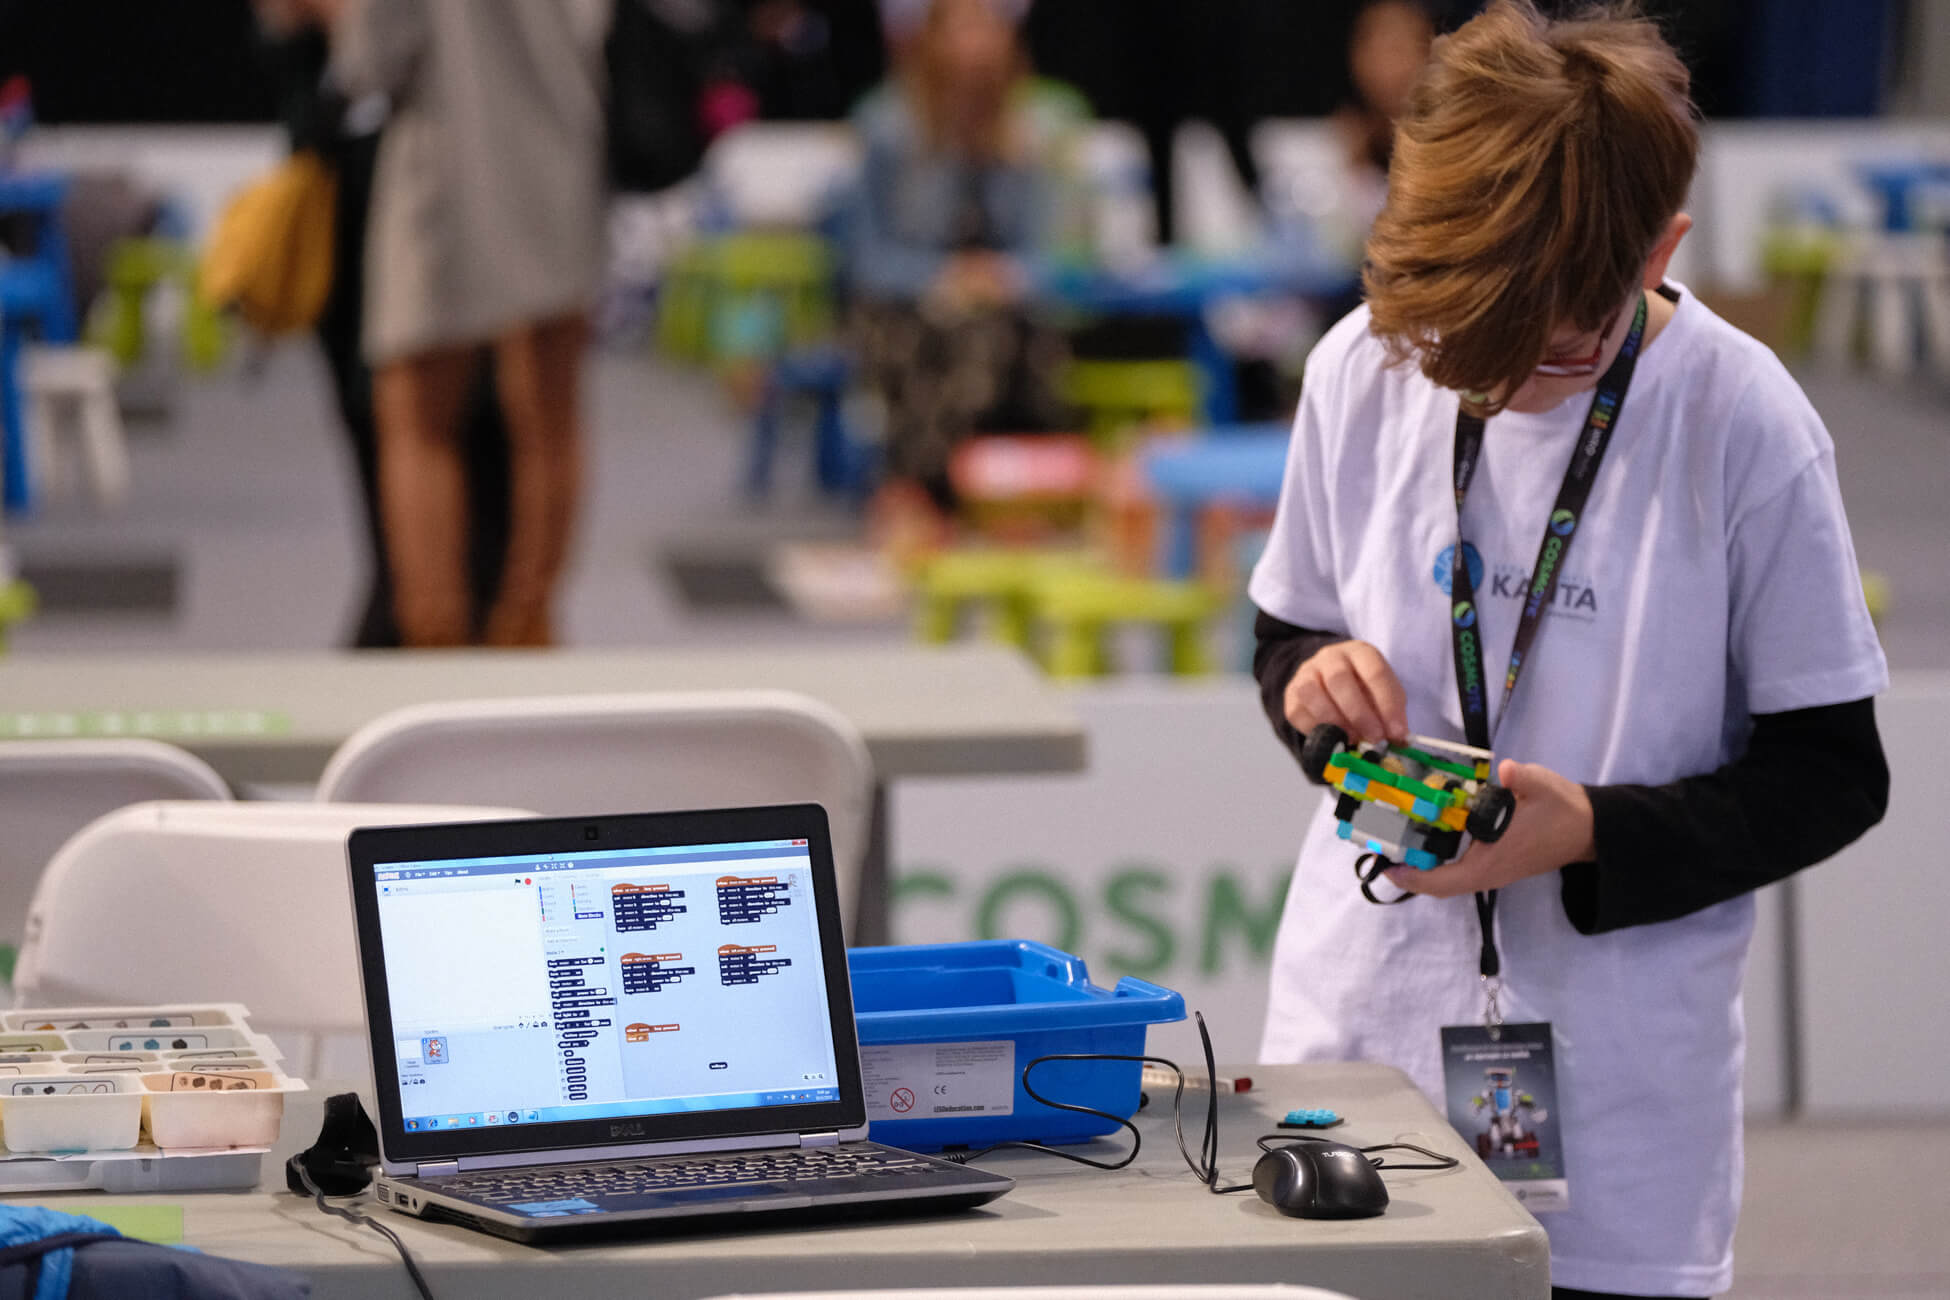 Πανελλήνιος Διαγωνισμός Εκπαιδευτικής Ρομποτικής: Η εκπαιδευτική ρομποτική κερδίζει συνεχώς έδαφος στην Ελλάδα, με ολοένα και περισσότερες συμμετοχές